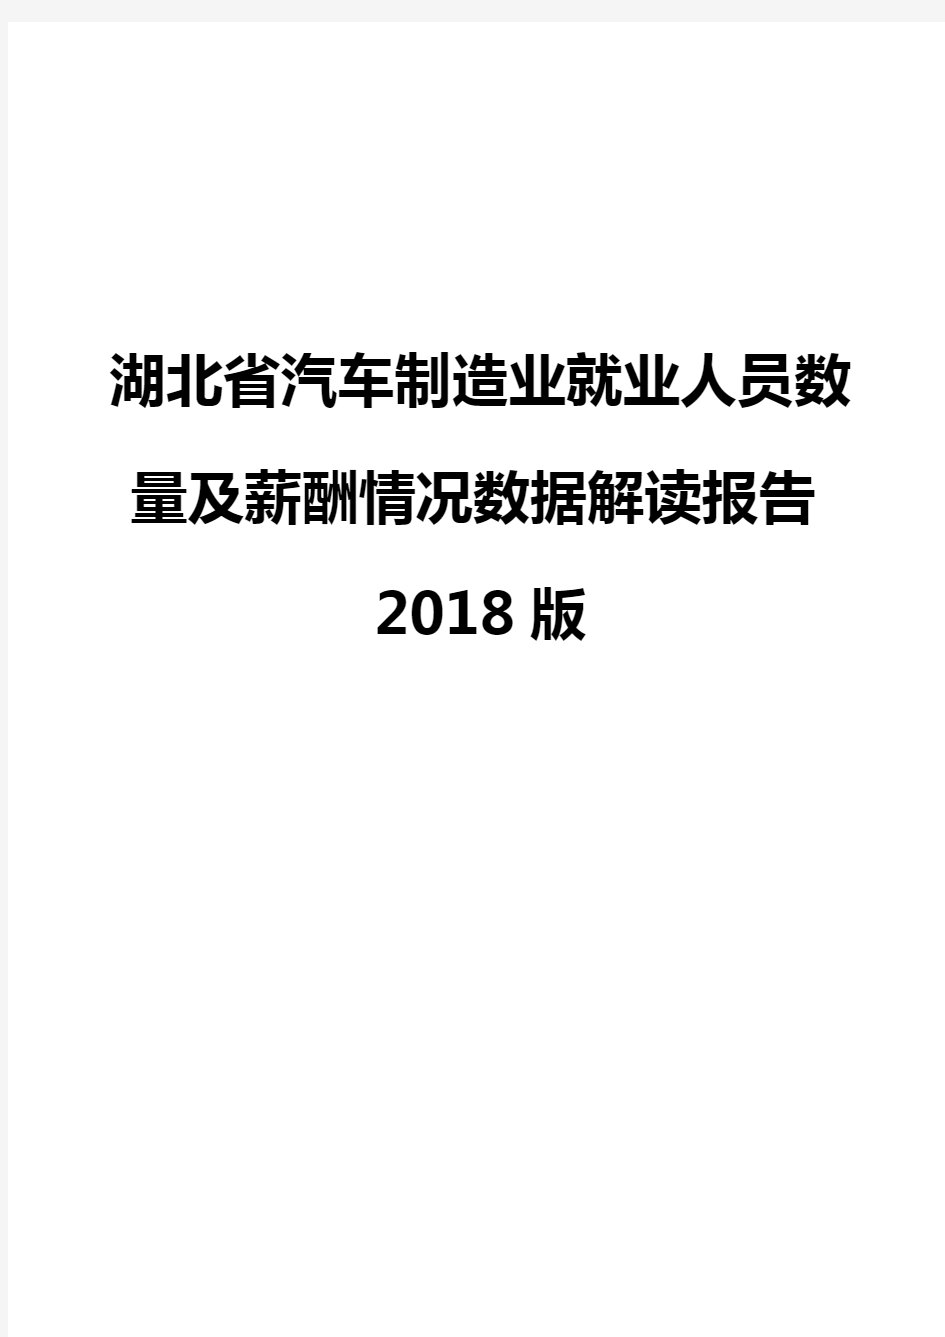 湖北省汽车制造业就业人员数量及薪酬情况数据解读报告2018版